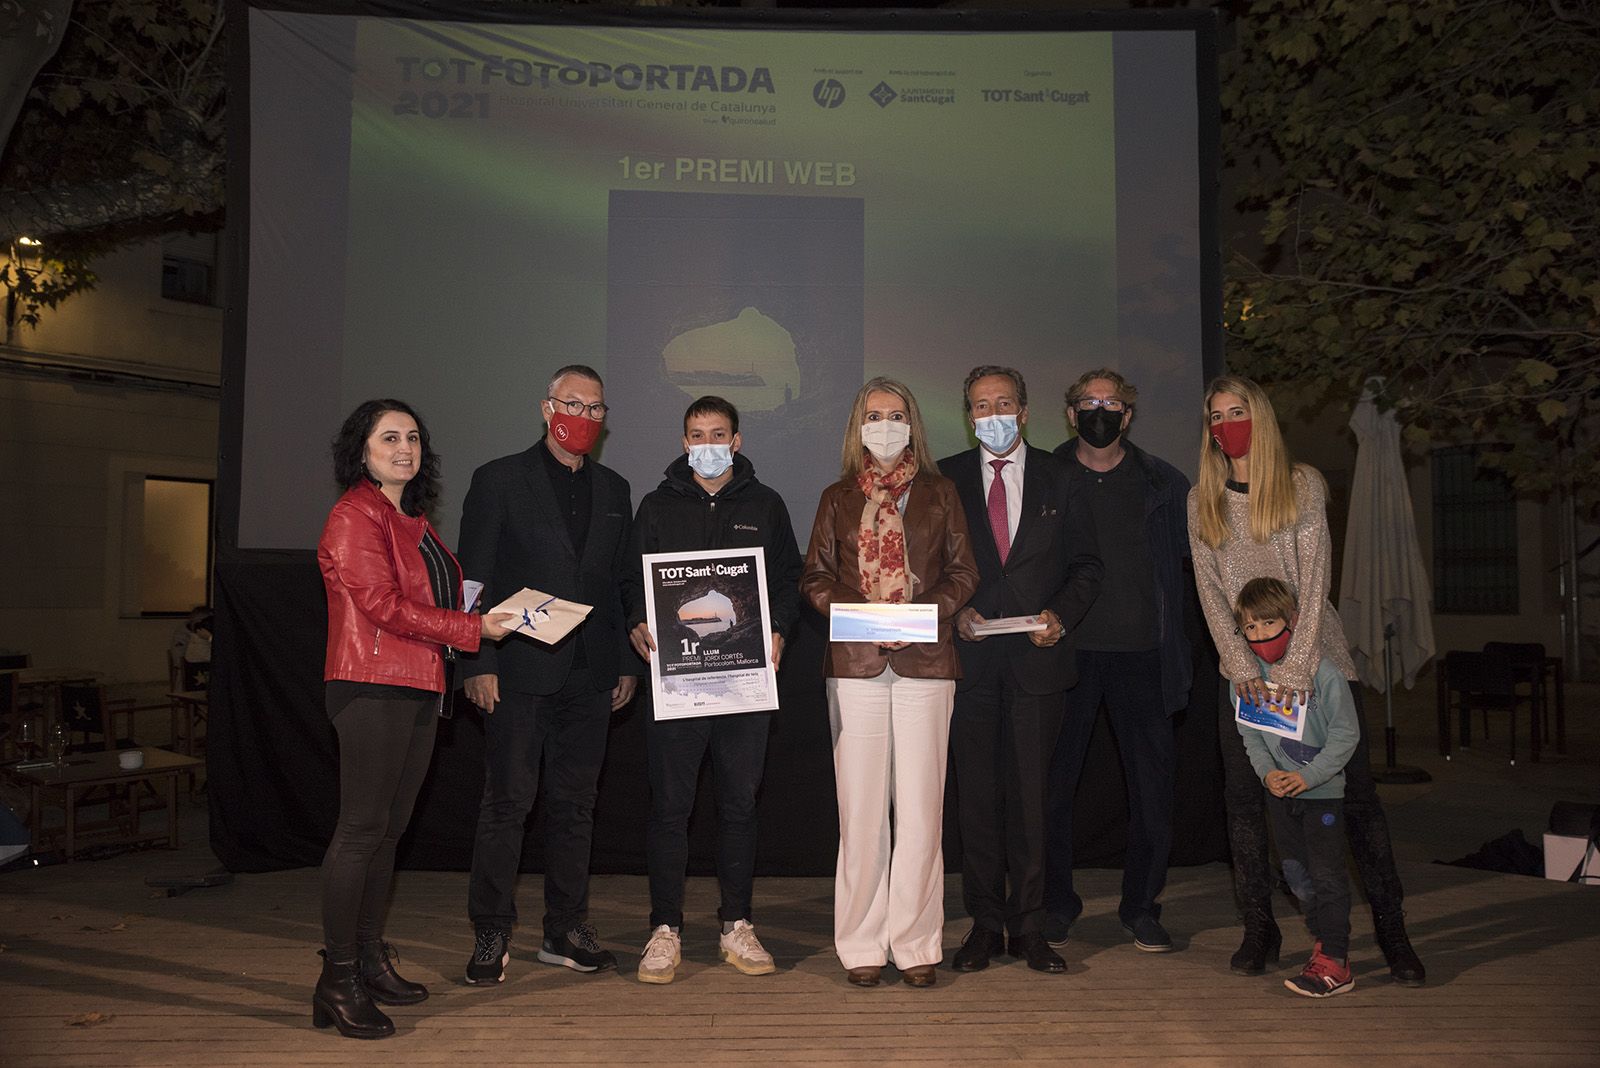 Jordi Cortés 1er Premi categoria web del TOT Fotoportada 2021. Foto: Bernat Millet.